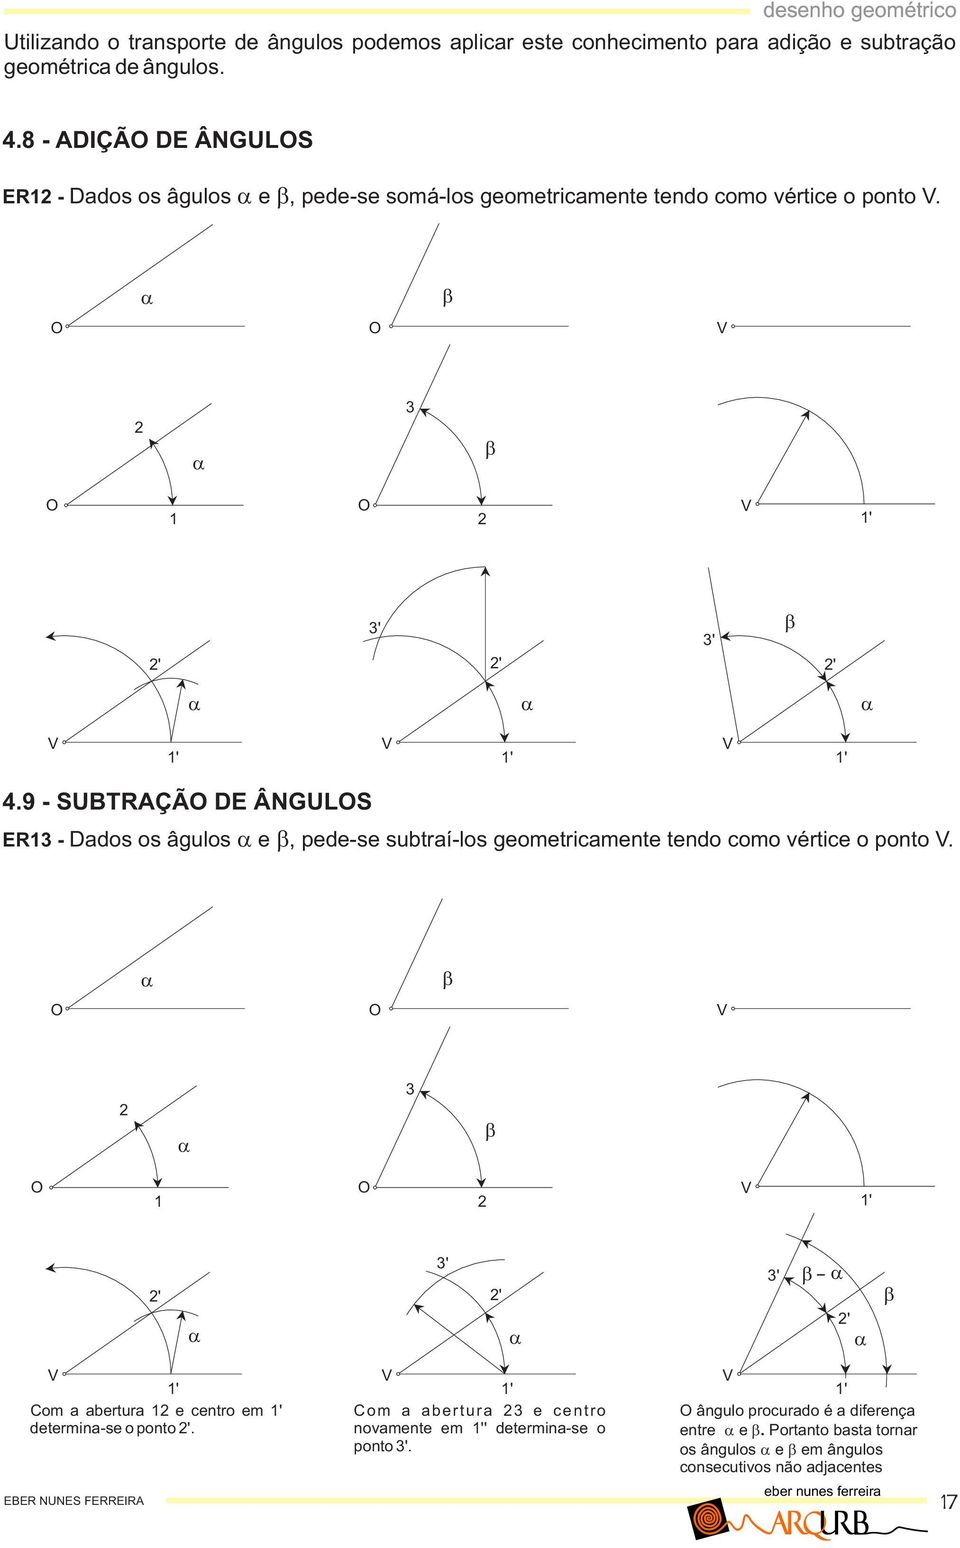 9 - SUTRÇÃ E ÂNGULS ER - dos os âgulos e, pede-se sutí-los geometicmente tendo como vétice o ponto V.